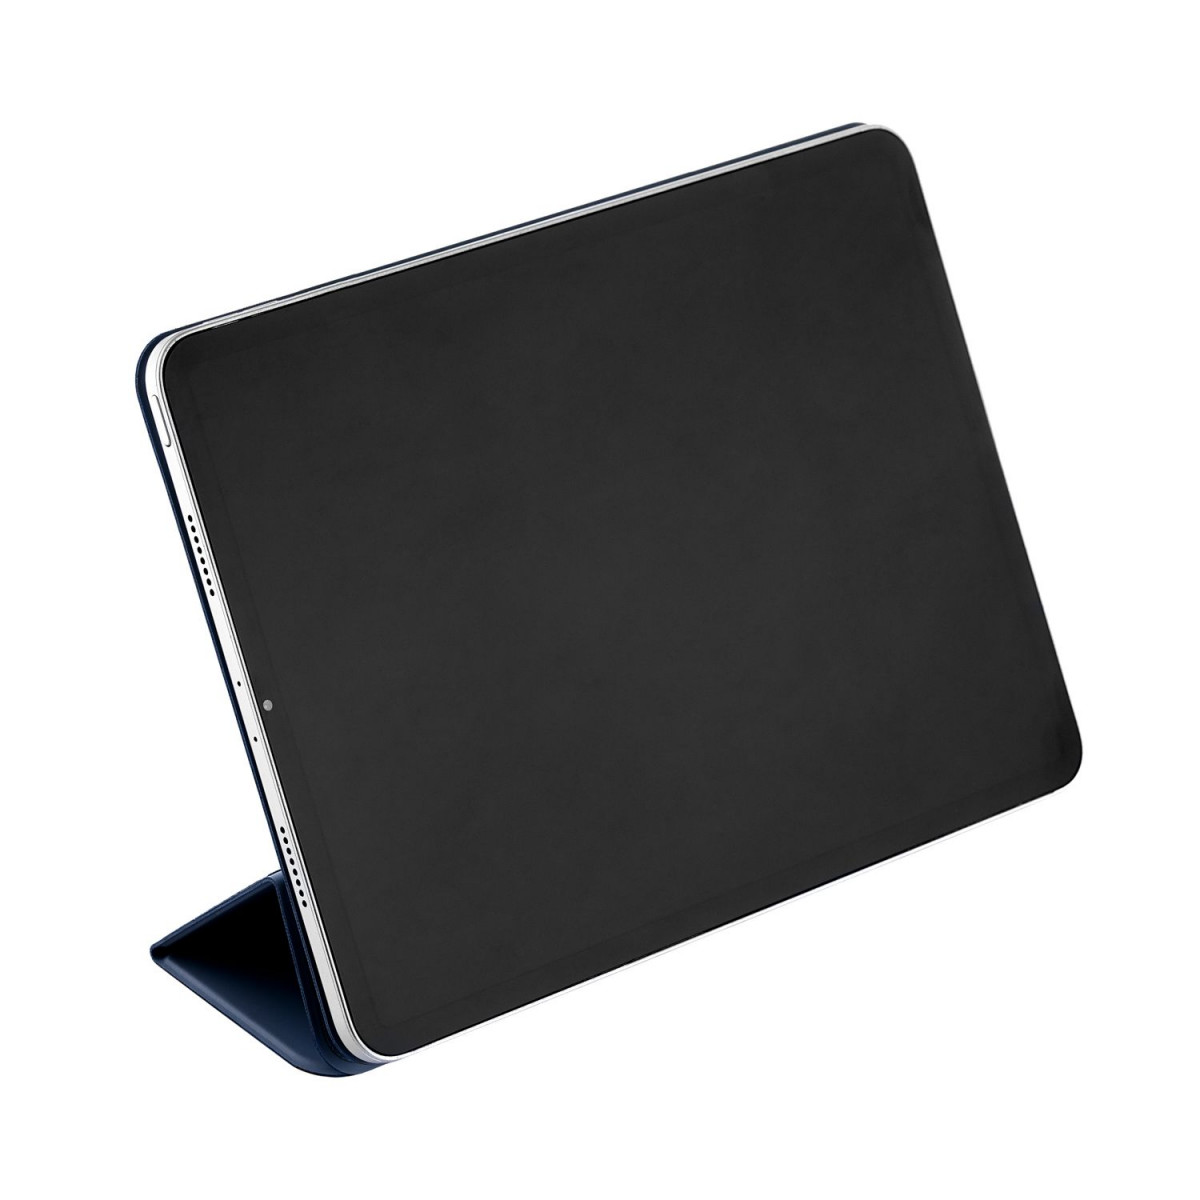 Чехол uBear Touch case для iPad Pro 12.9”, Темно-синий